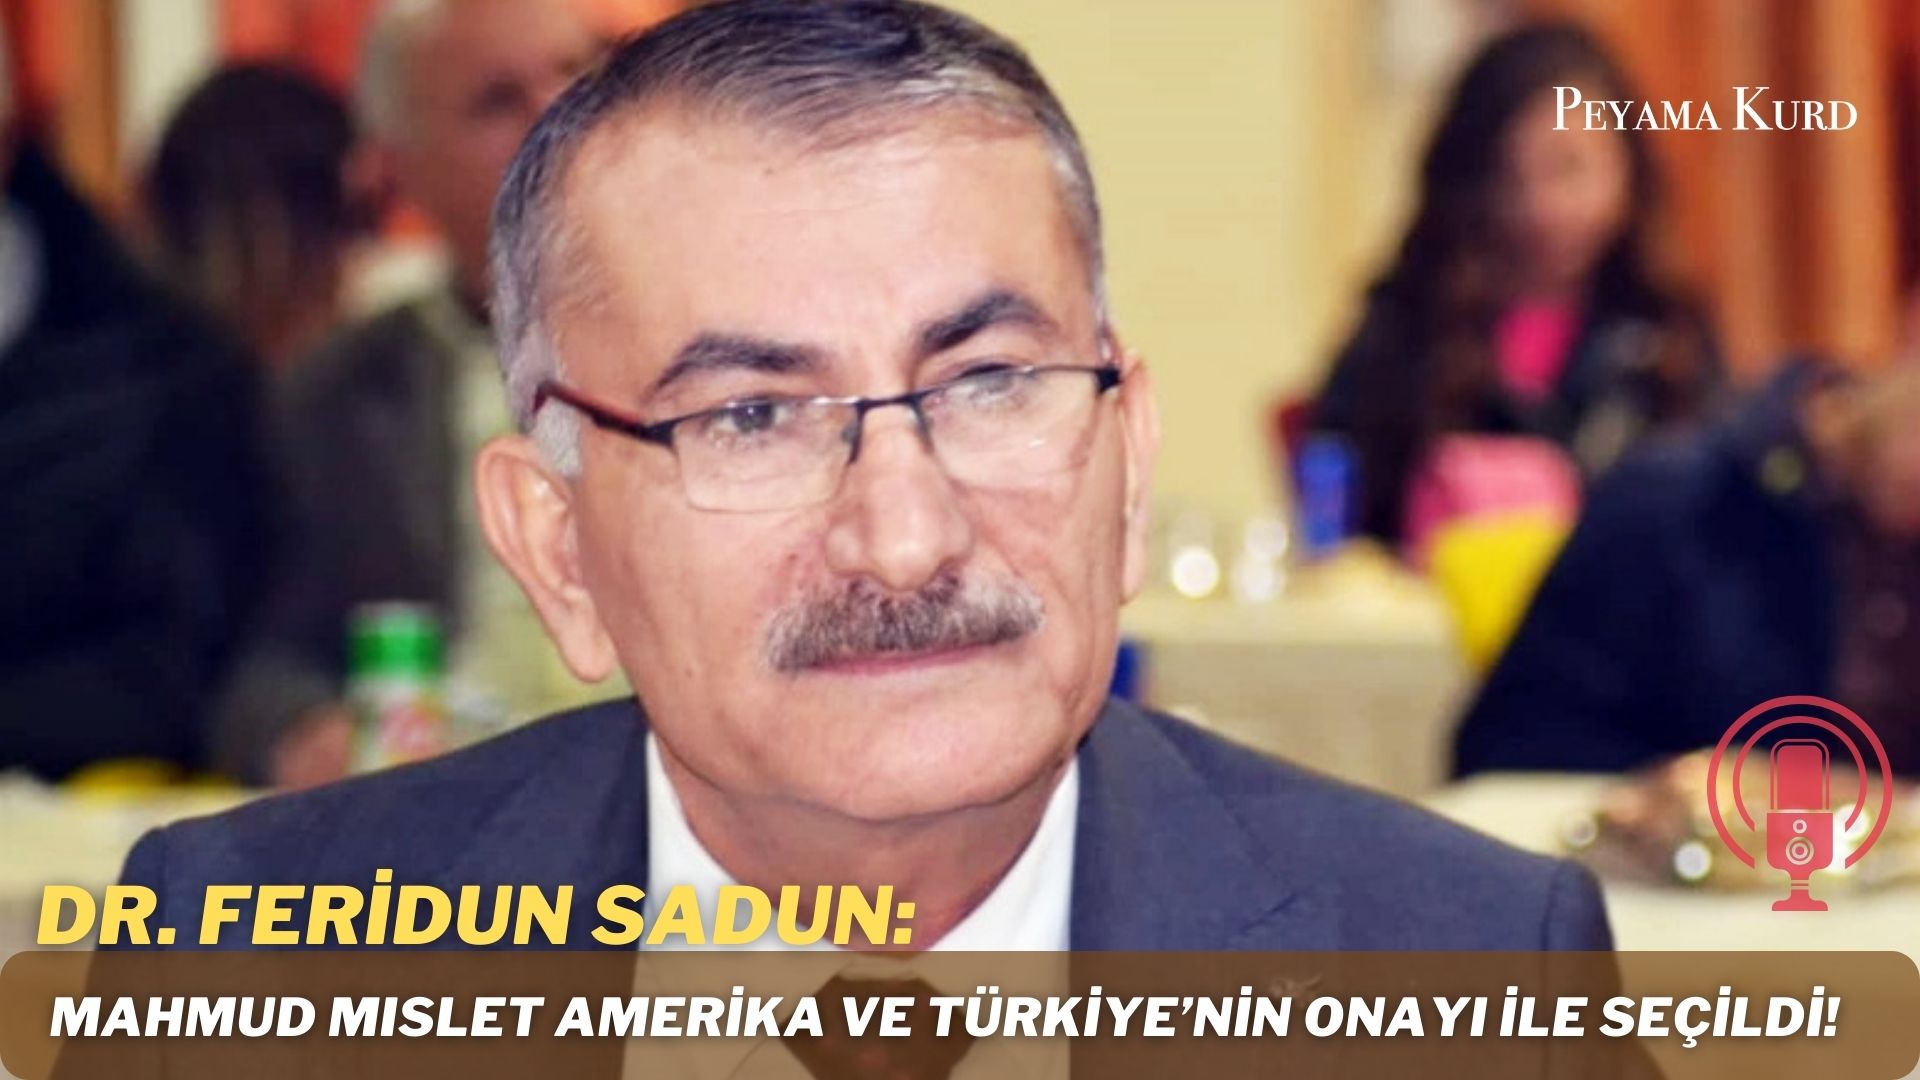 RÖPORTAJ | Sadun: "MSD, yeni liderleri ile Türkiye düşmanlığından kurtulmak istiyor"